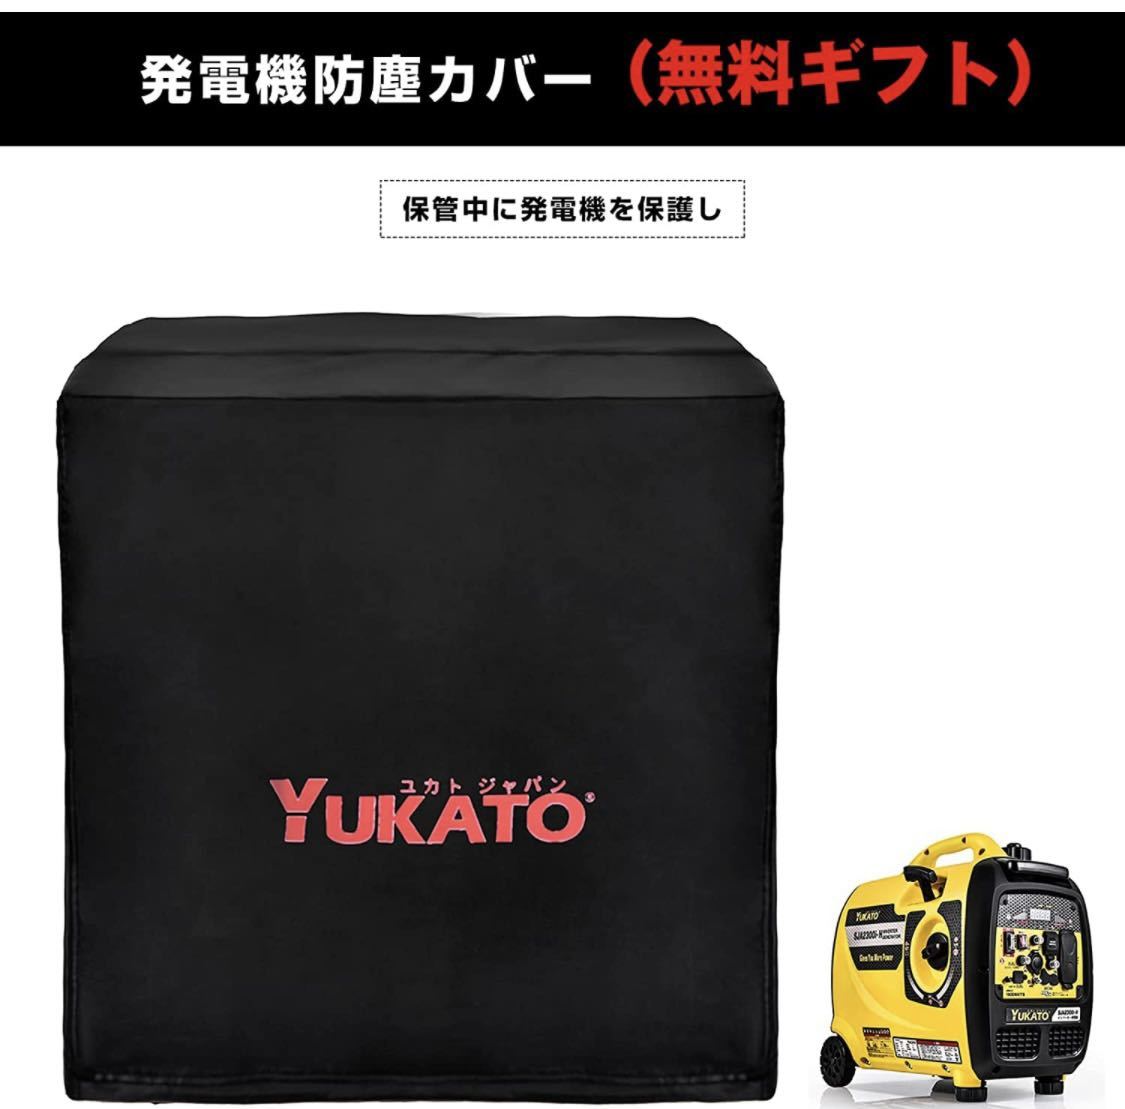 ユカト(YUKATO)インバーター発電機 高性能 定格出力1.6kVA 50Hz/60Hz